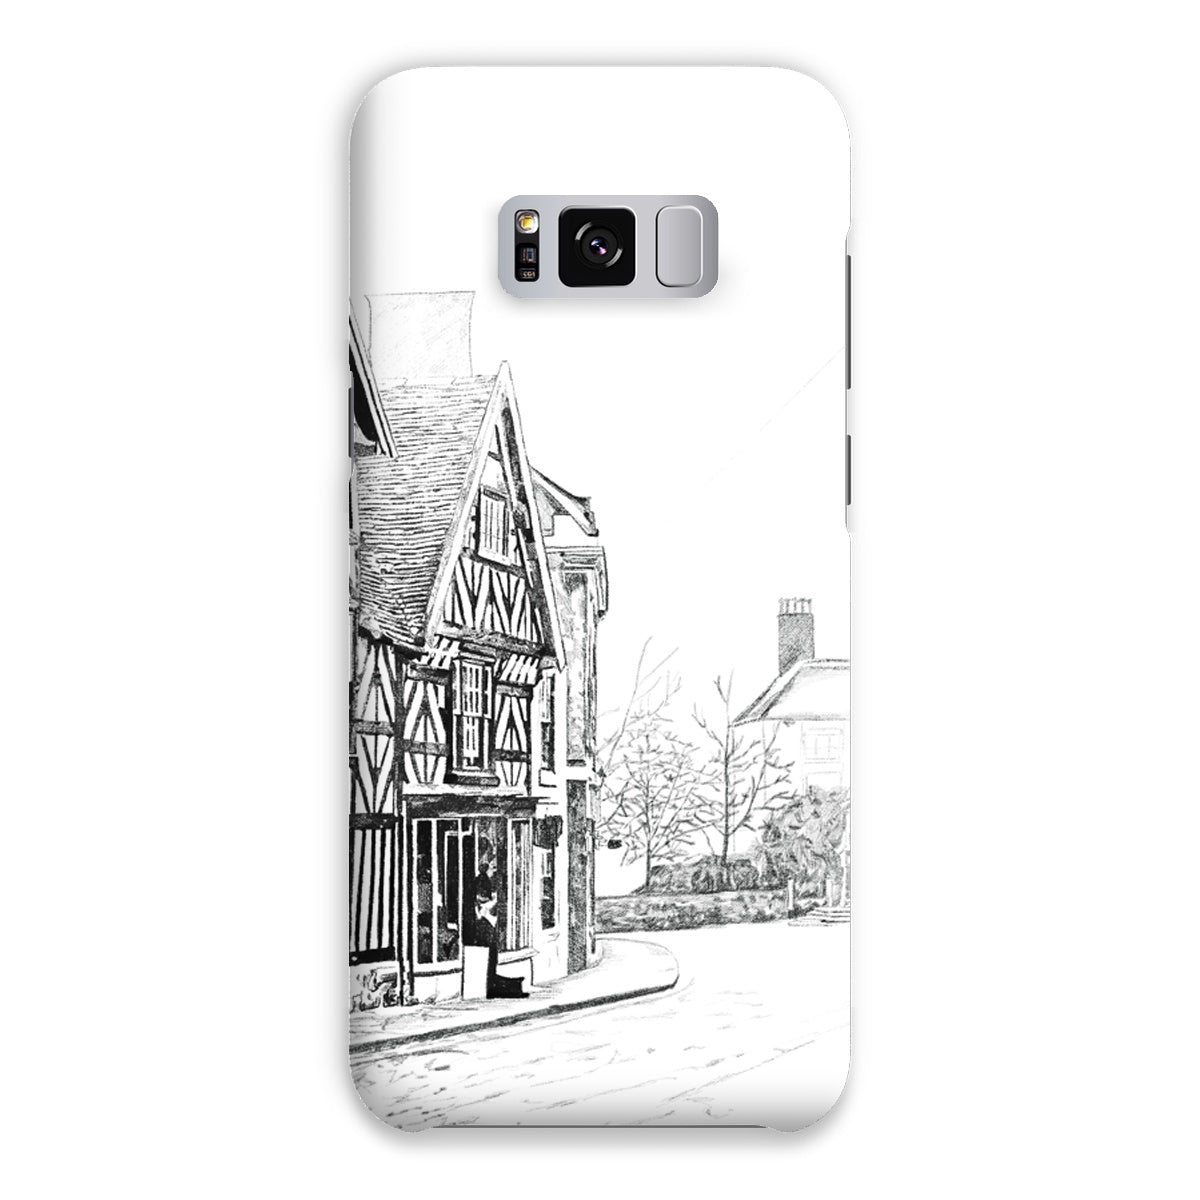 The Tudor House, Cheadle Snap Phone Case